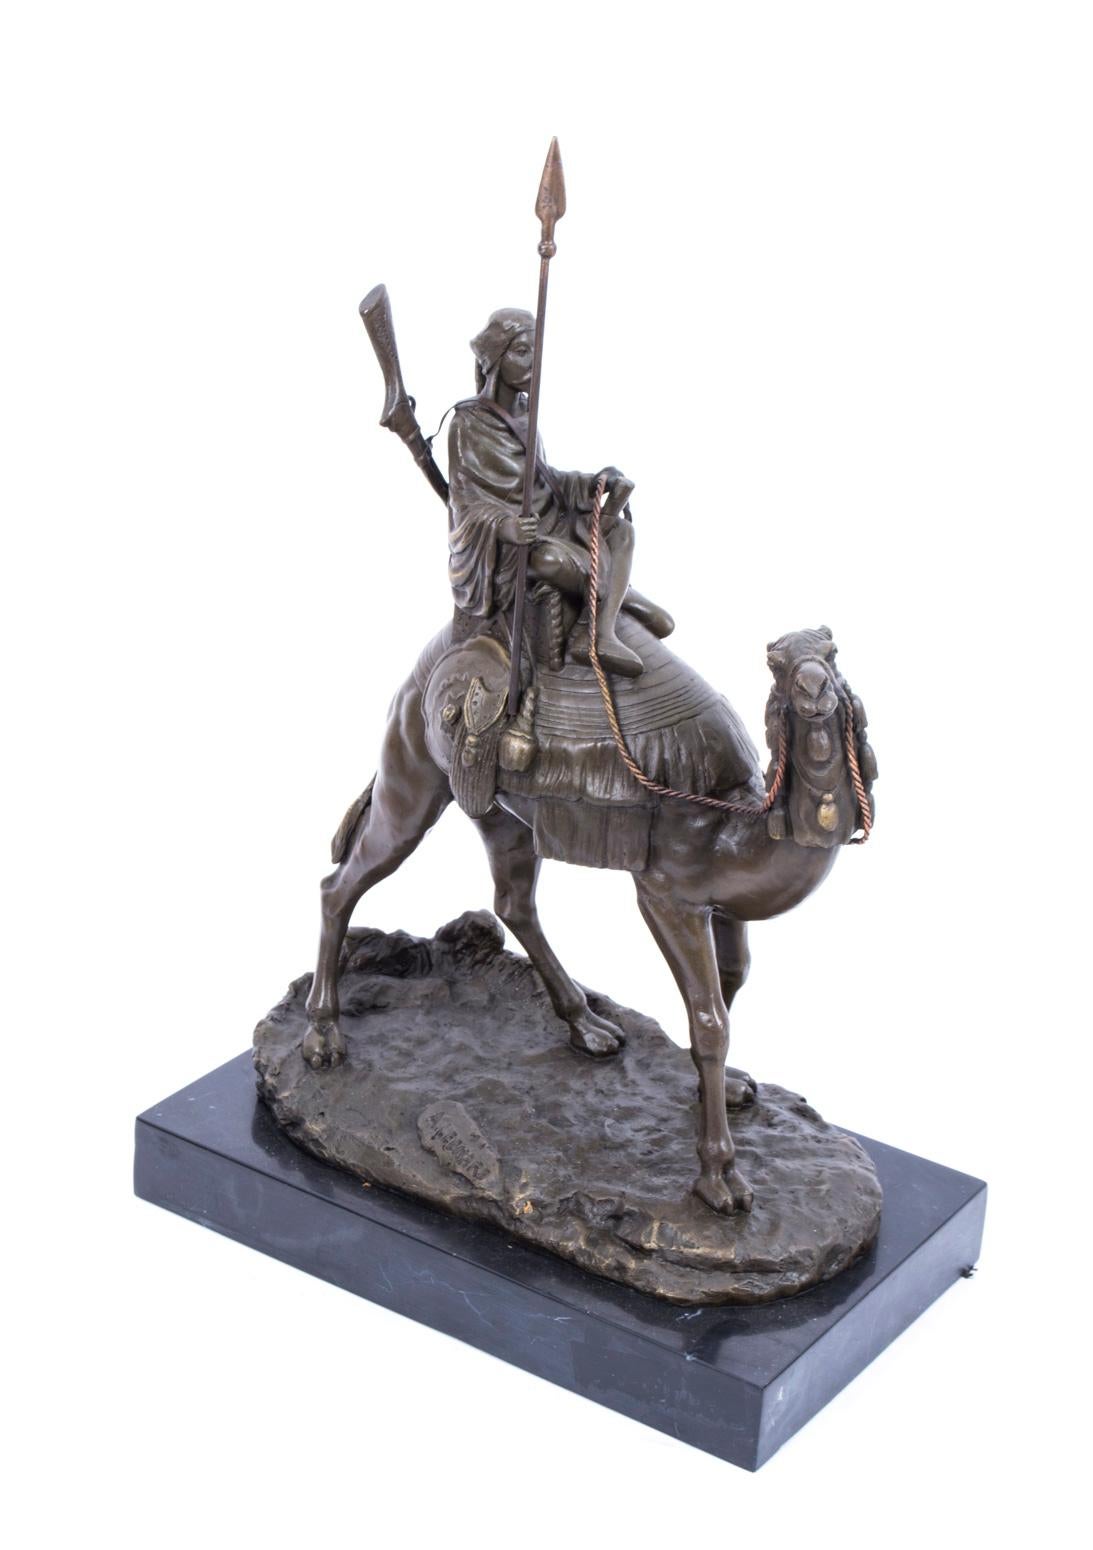 Il s'agit d'une sculpture en bronze d'un guerrier bédouin avec une lance et un fusil chevauchant son navire du désert:: datant de la fin du 20e siècle. 
Ce bronze massif coulé à chaud de haute qualité a été produit selon le procédé traditionnel de